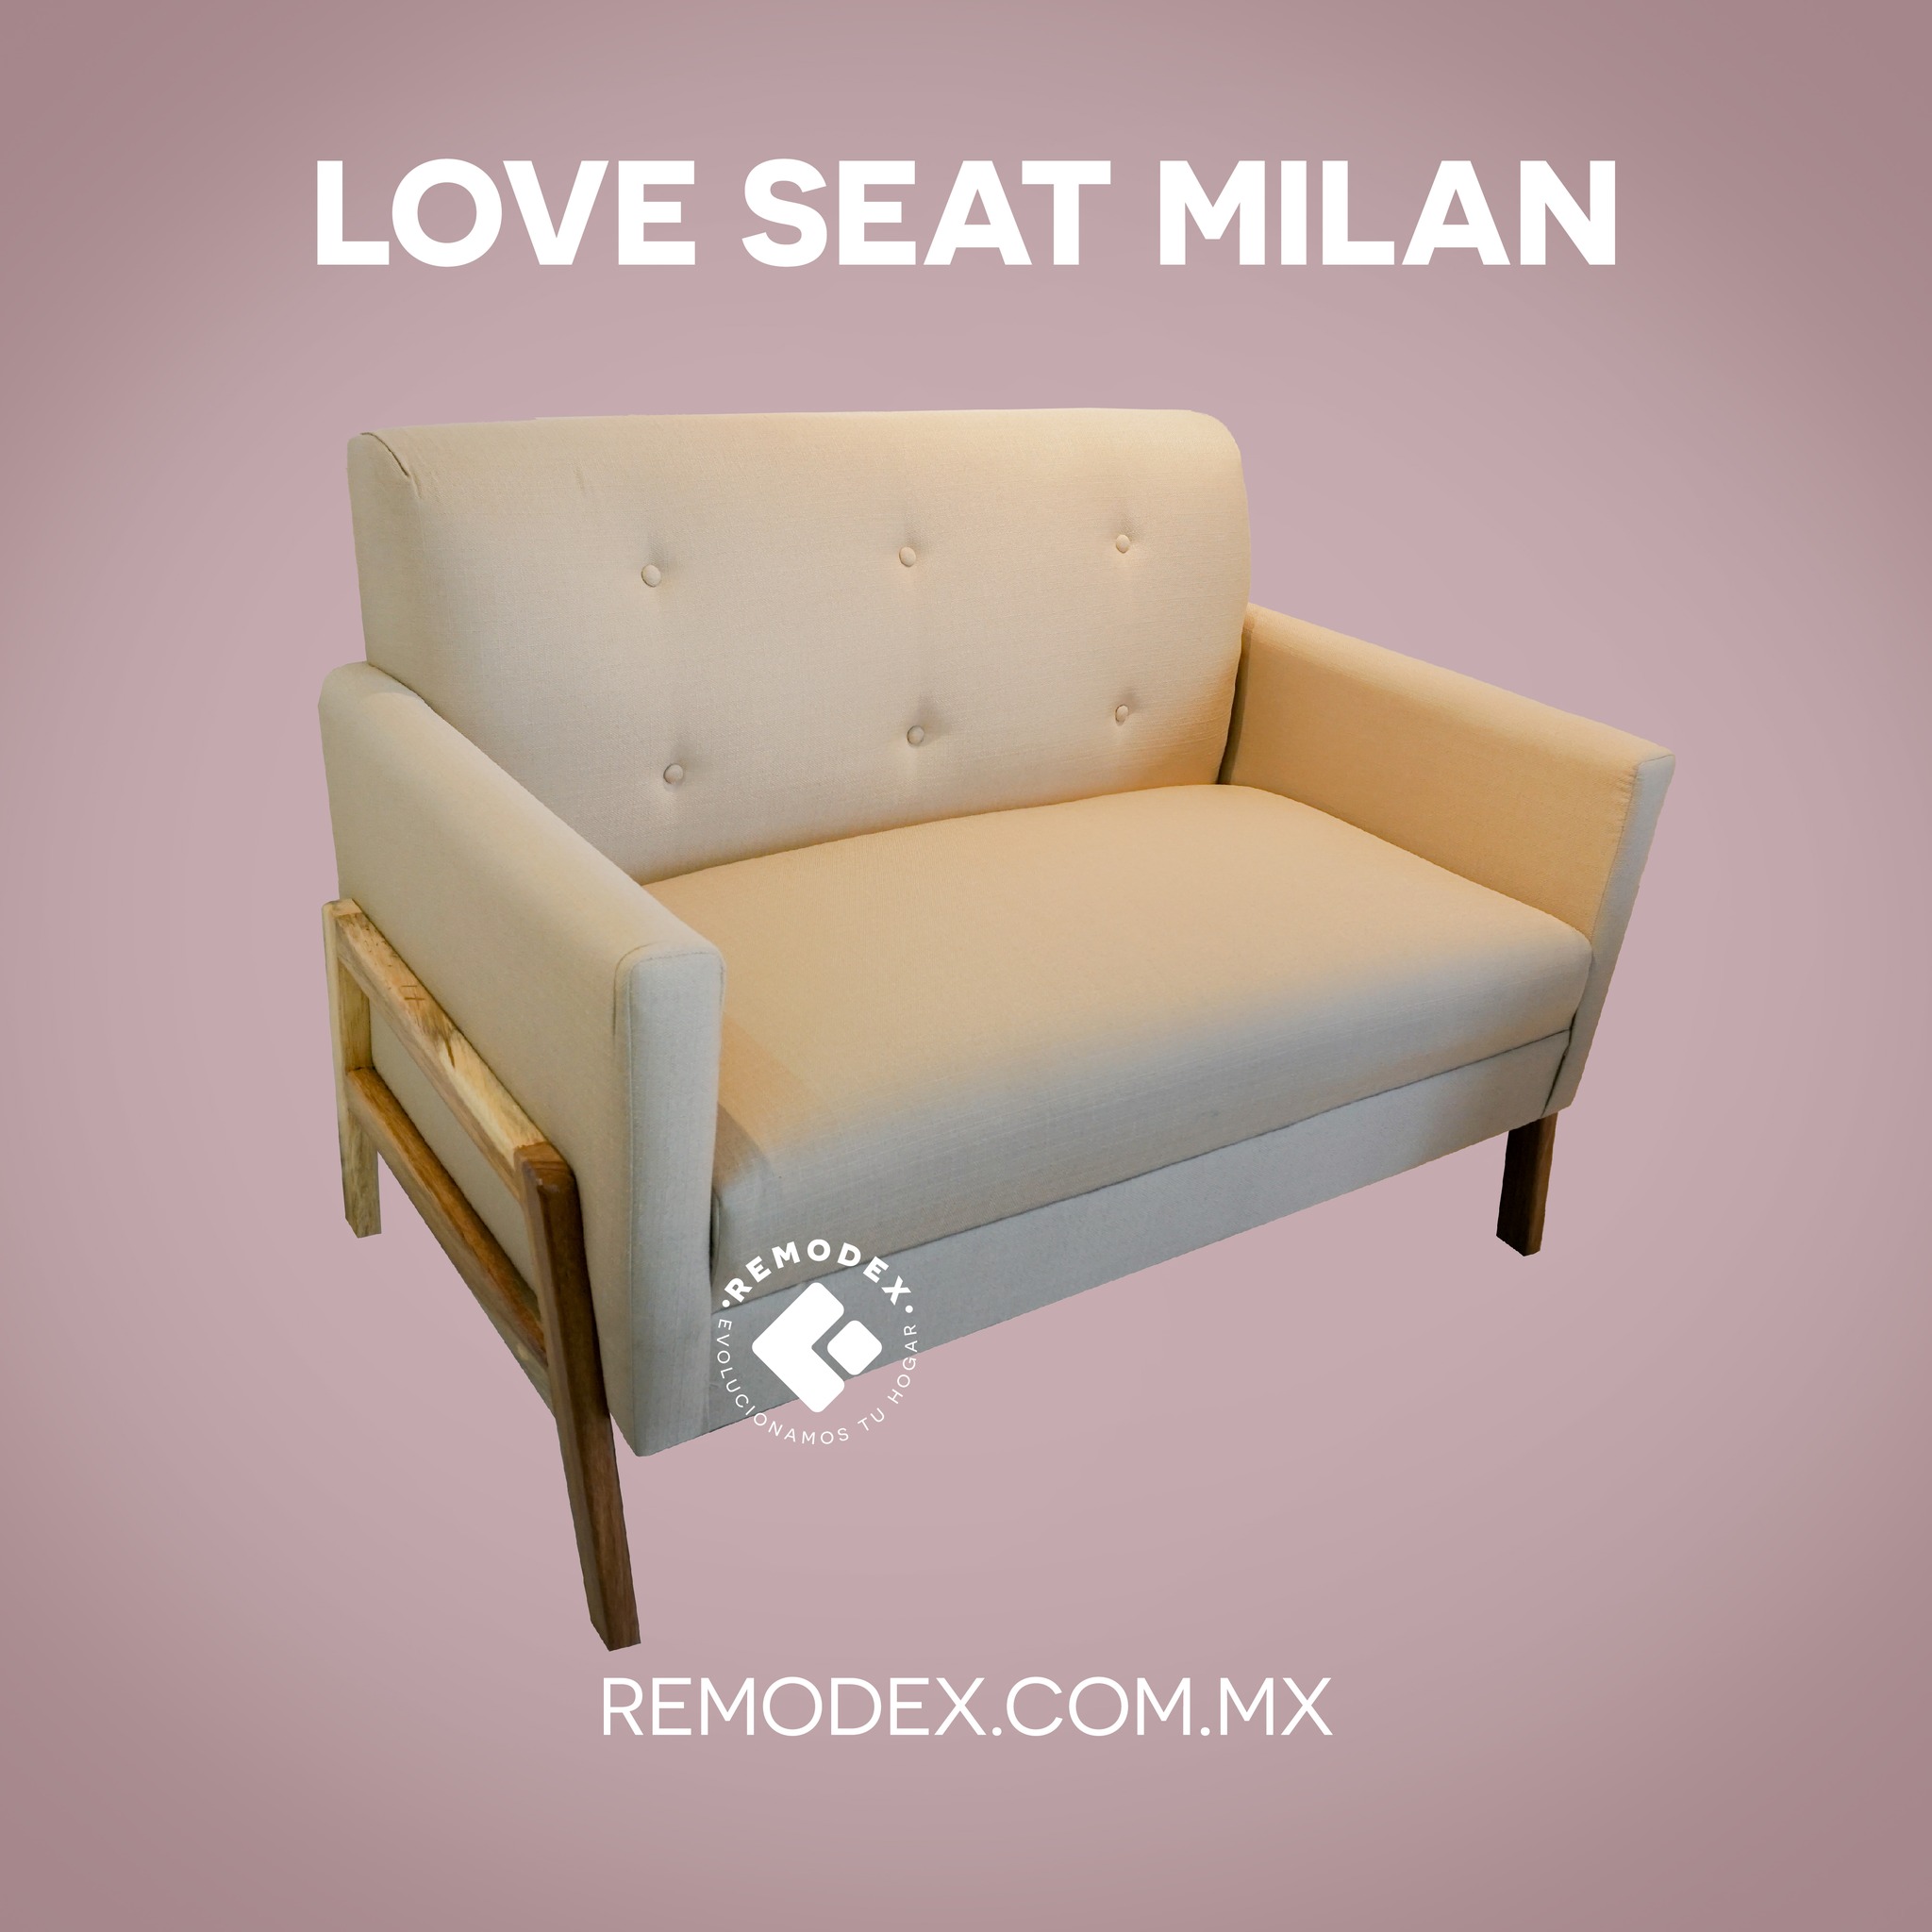 LOVE SEAT MILAN